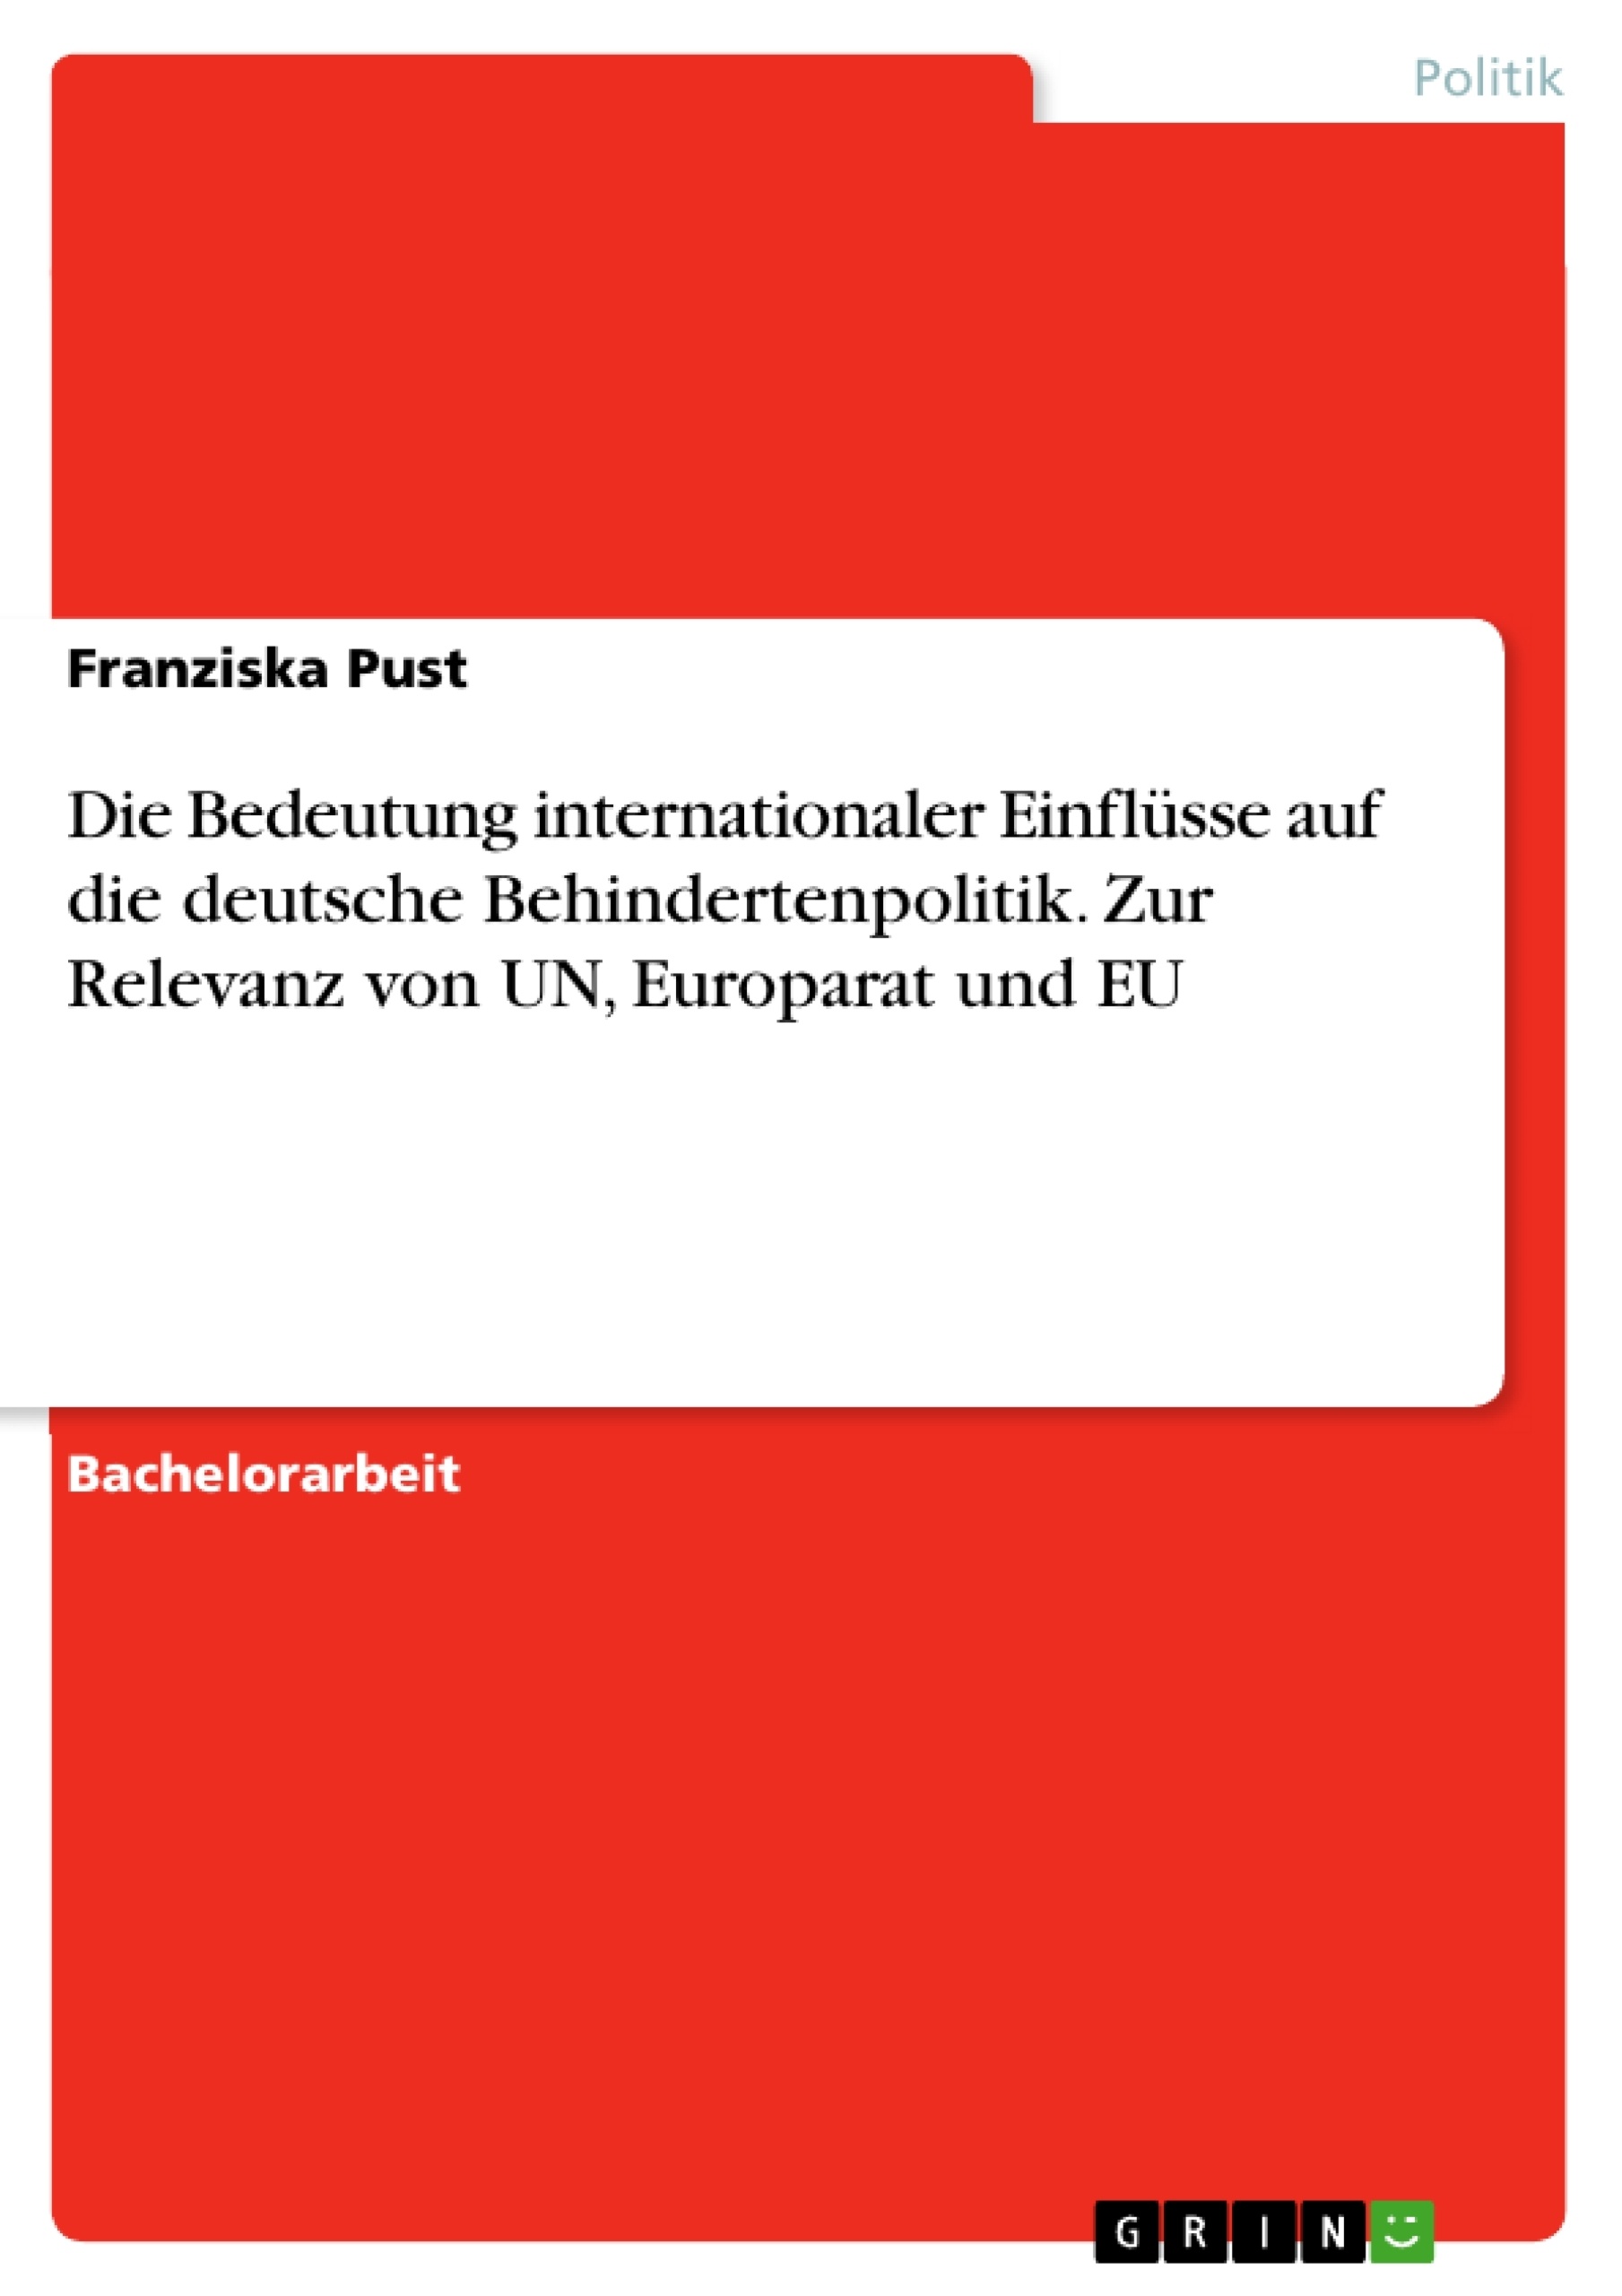 Título: Die Bedeutung internationaler Einflüsse auf die deutsche Behindertenpolitik. Zur Relevanz von UN, Europarat und EU